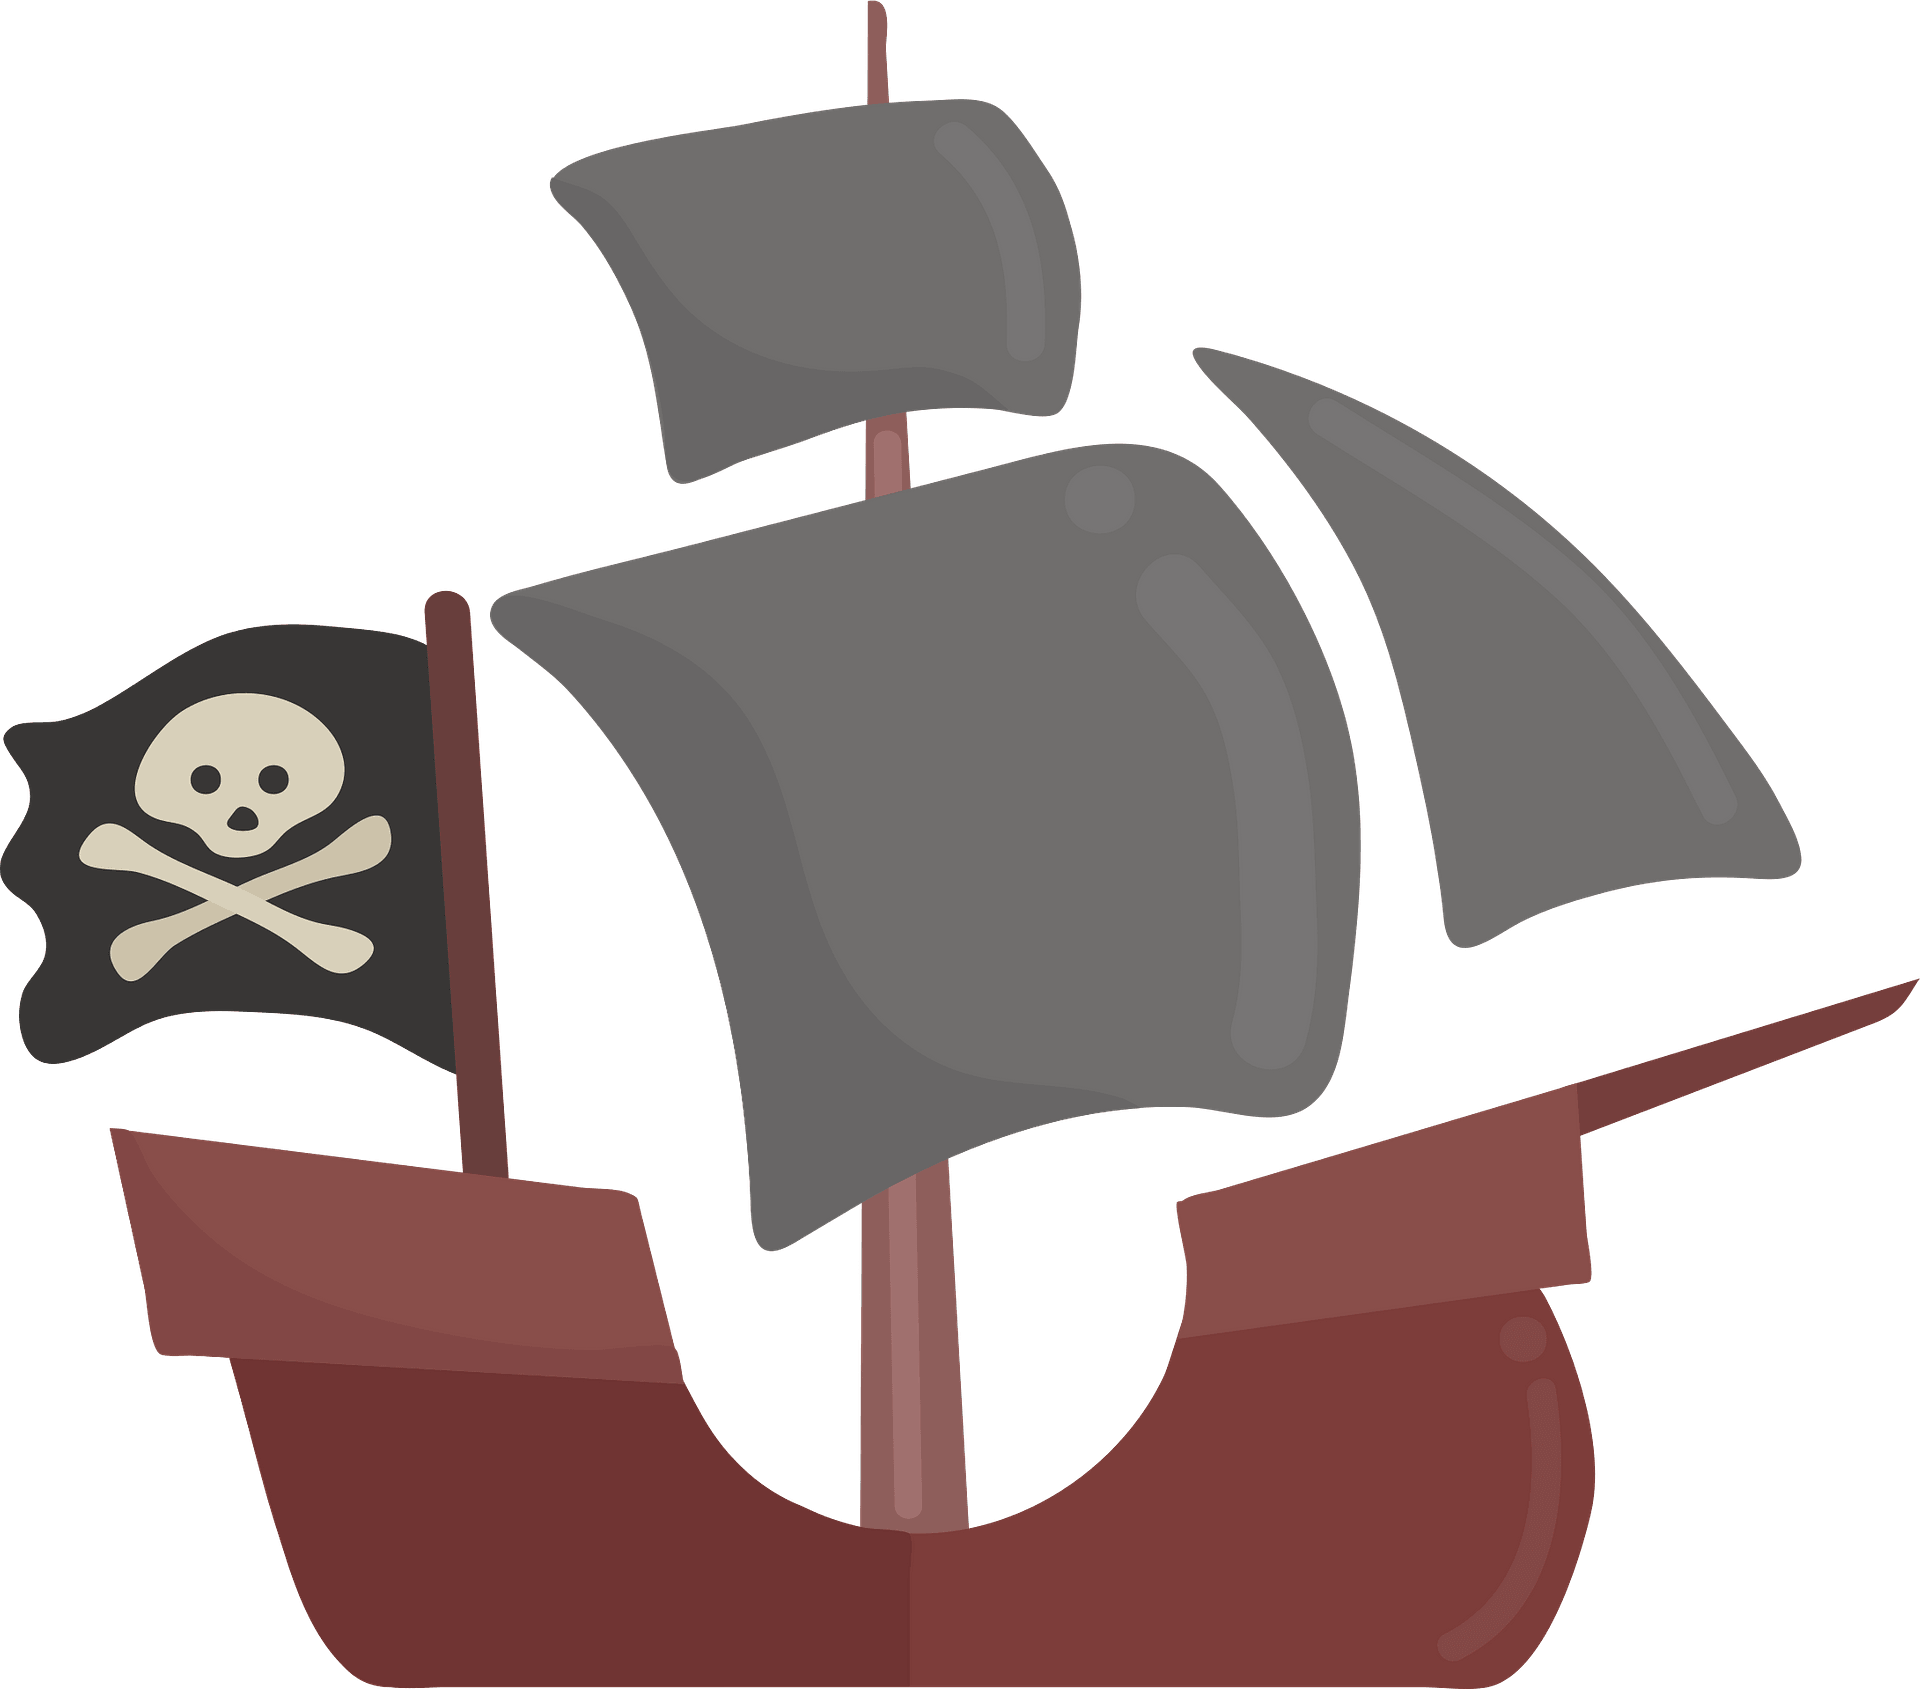 Pirate Ship PNG Free Image